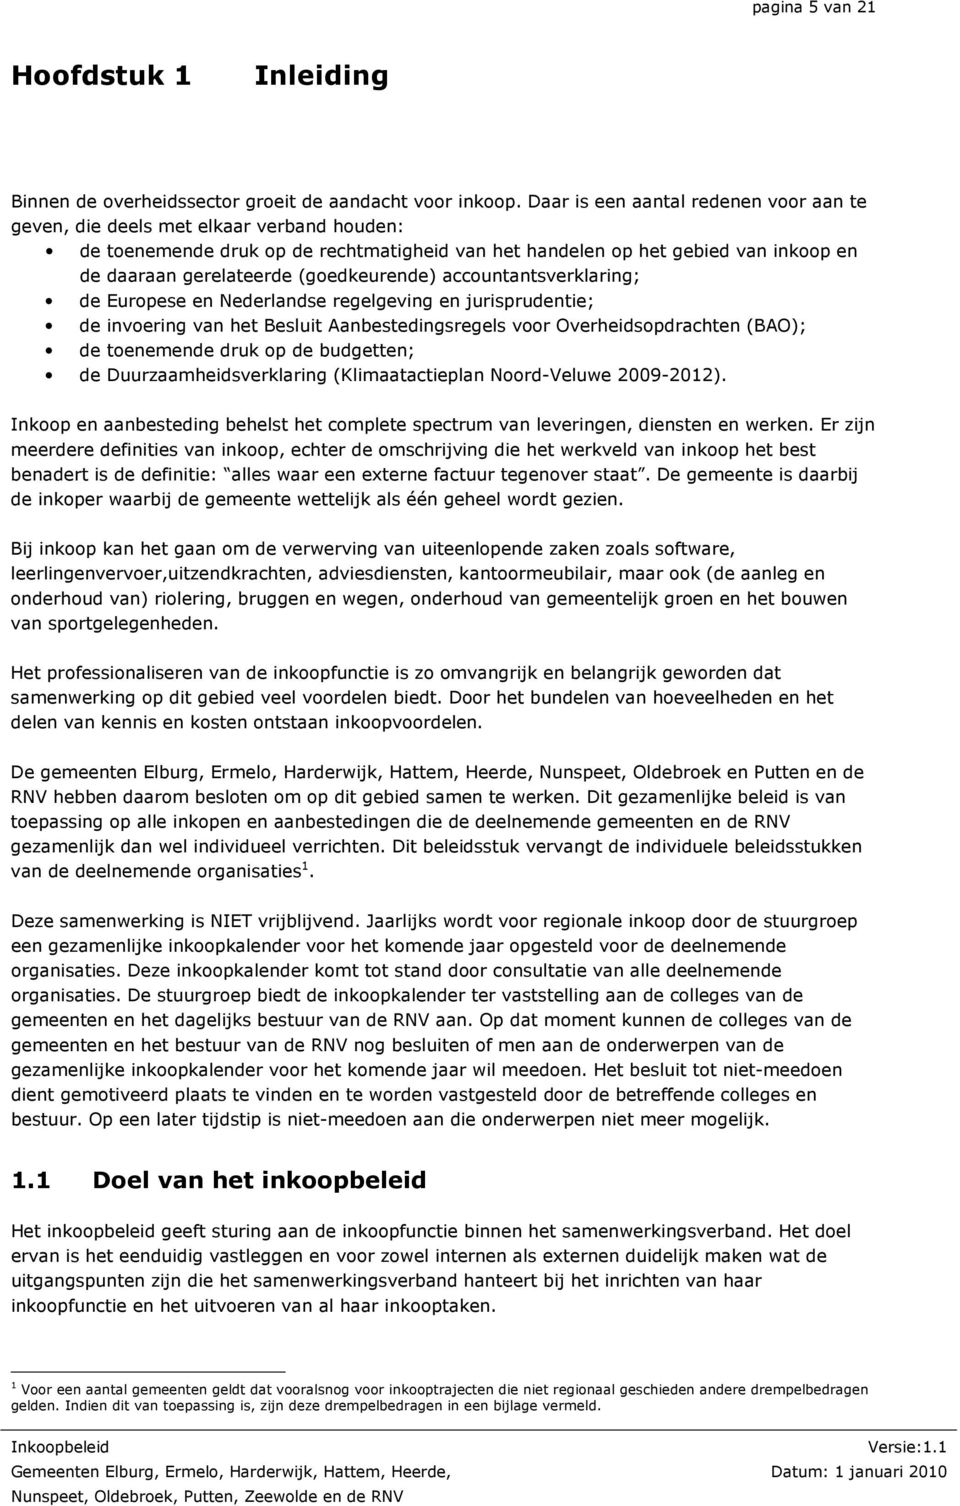 (goedkeurende) accountantsverklaring; de Europese en Nederlandse regelgeving en jurisprudentie; de invoering van het Besluit Aanbestedingsregels voor Overheidsopdrachten (BAO); de toenemende druk op